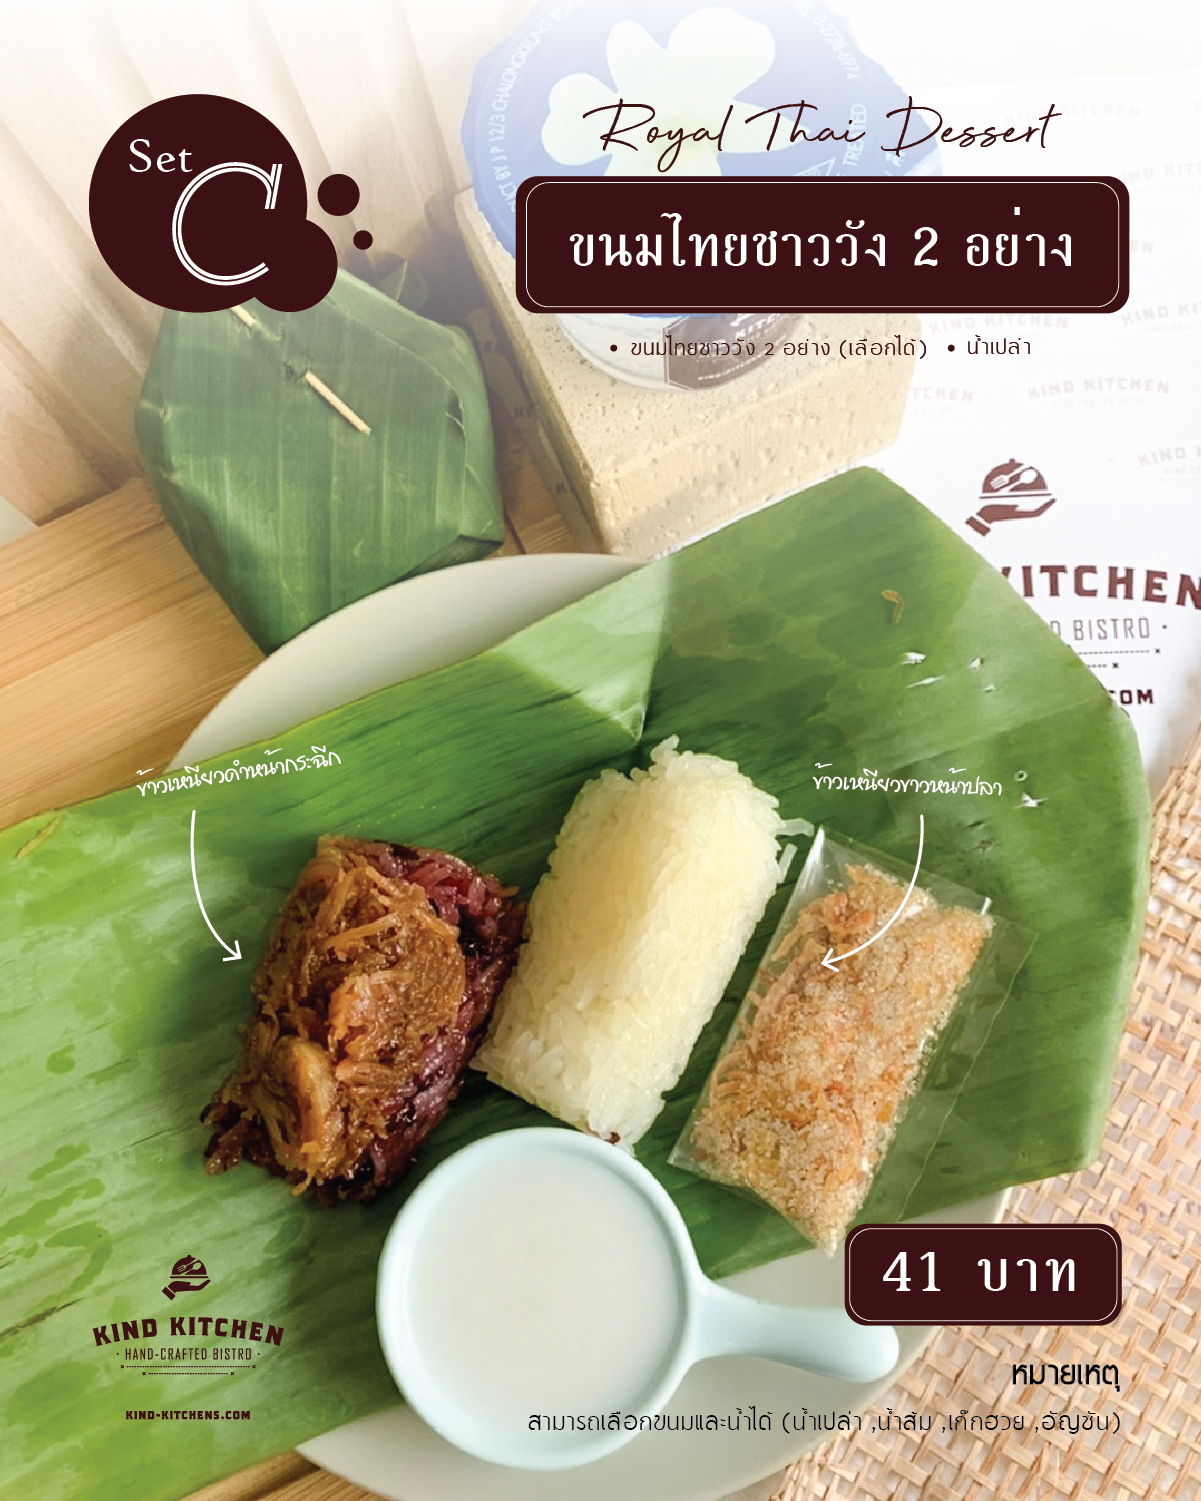 Royal Thai Dessert ขนมชาววัง 2 อย่าง พร้อมน้ำ(เลือกได้) Set C